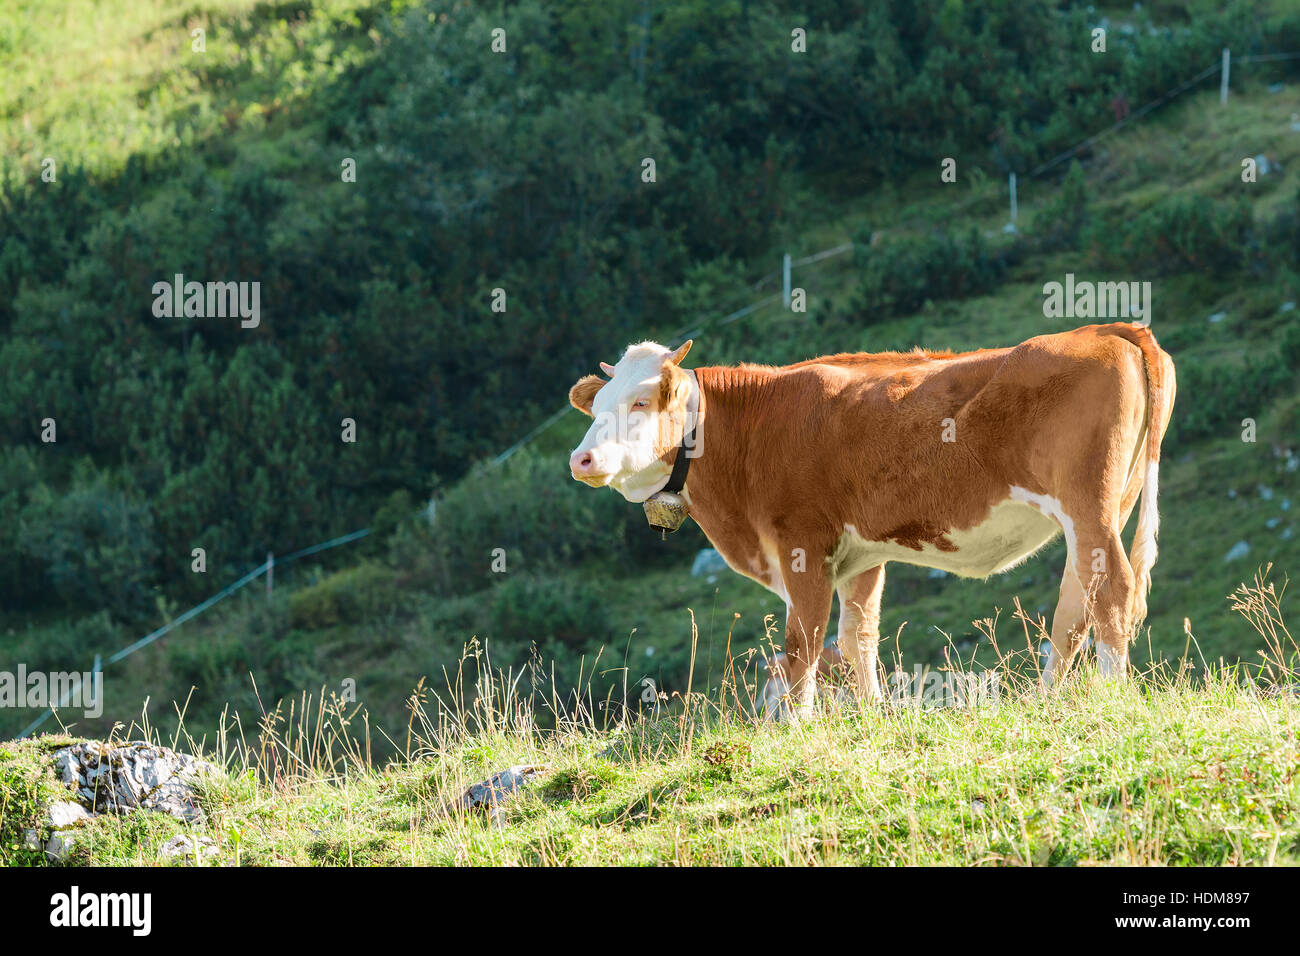 Hochland alpinen Weiden mit frischem Gras- und Hereford Rasse grasende Kuh. Stock Foto sonnigen Sommertag bei Alpen Berg gefangen genommen. Stockfoto